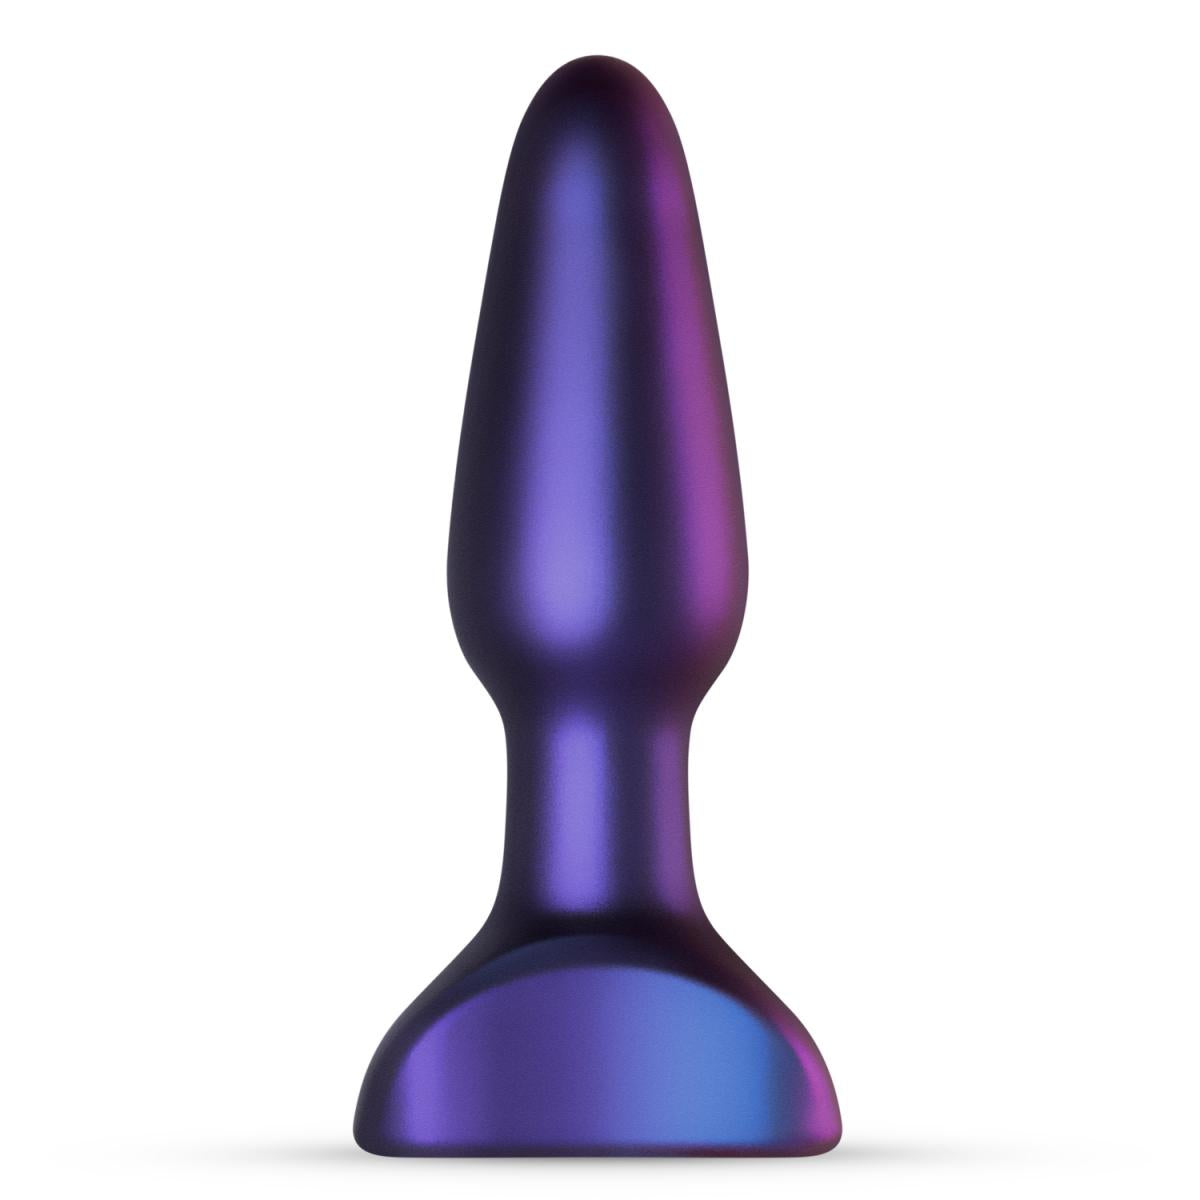 Luxe stijlvolle vibrerende butt plug van het merk Hueman. De butt plug is gemaakt van zachte siliconen. Hueman koop je bij Flavourez